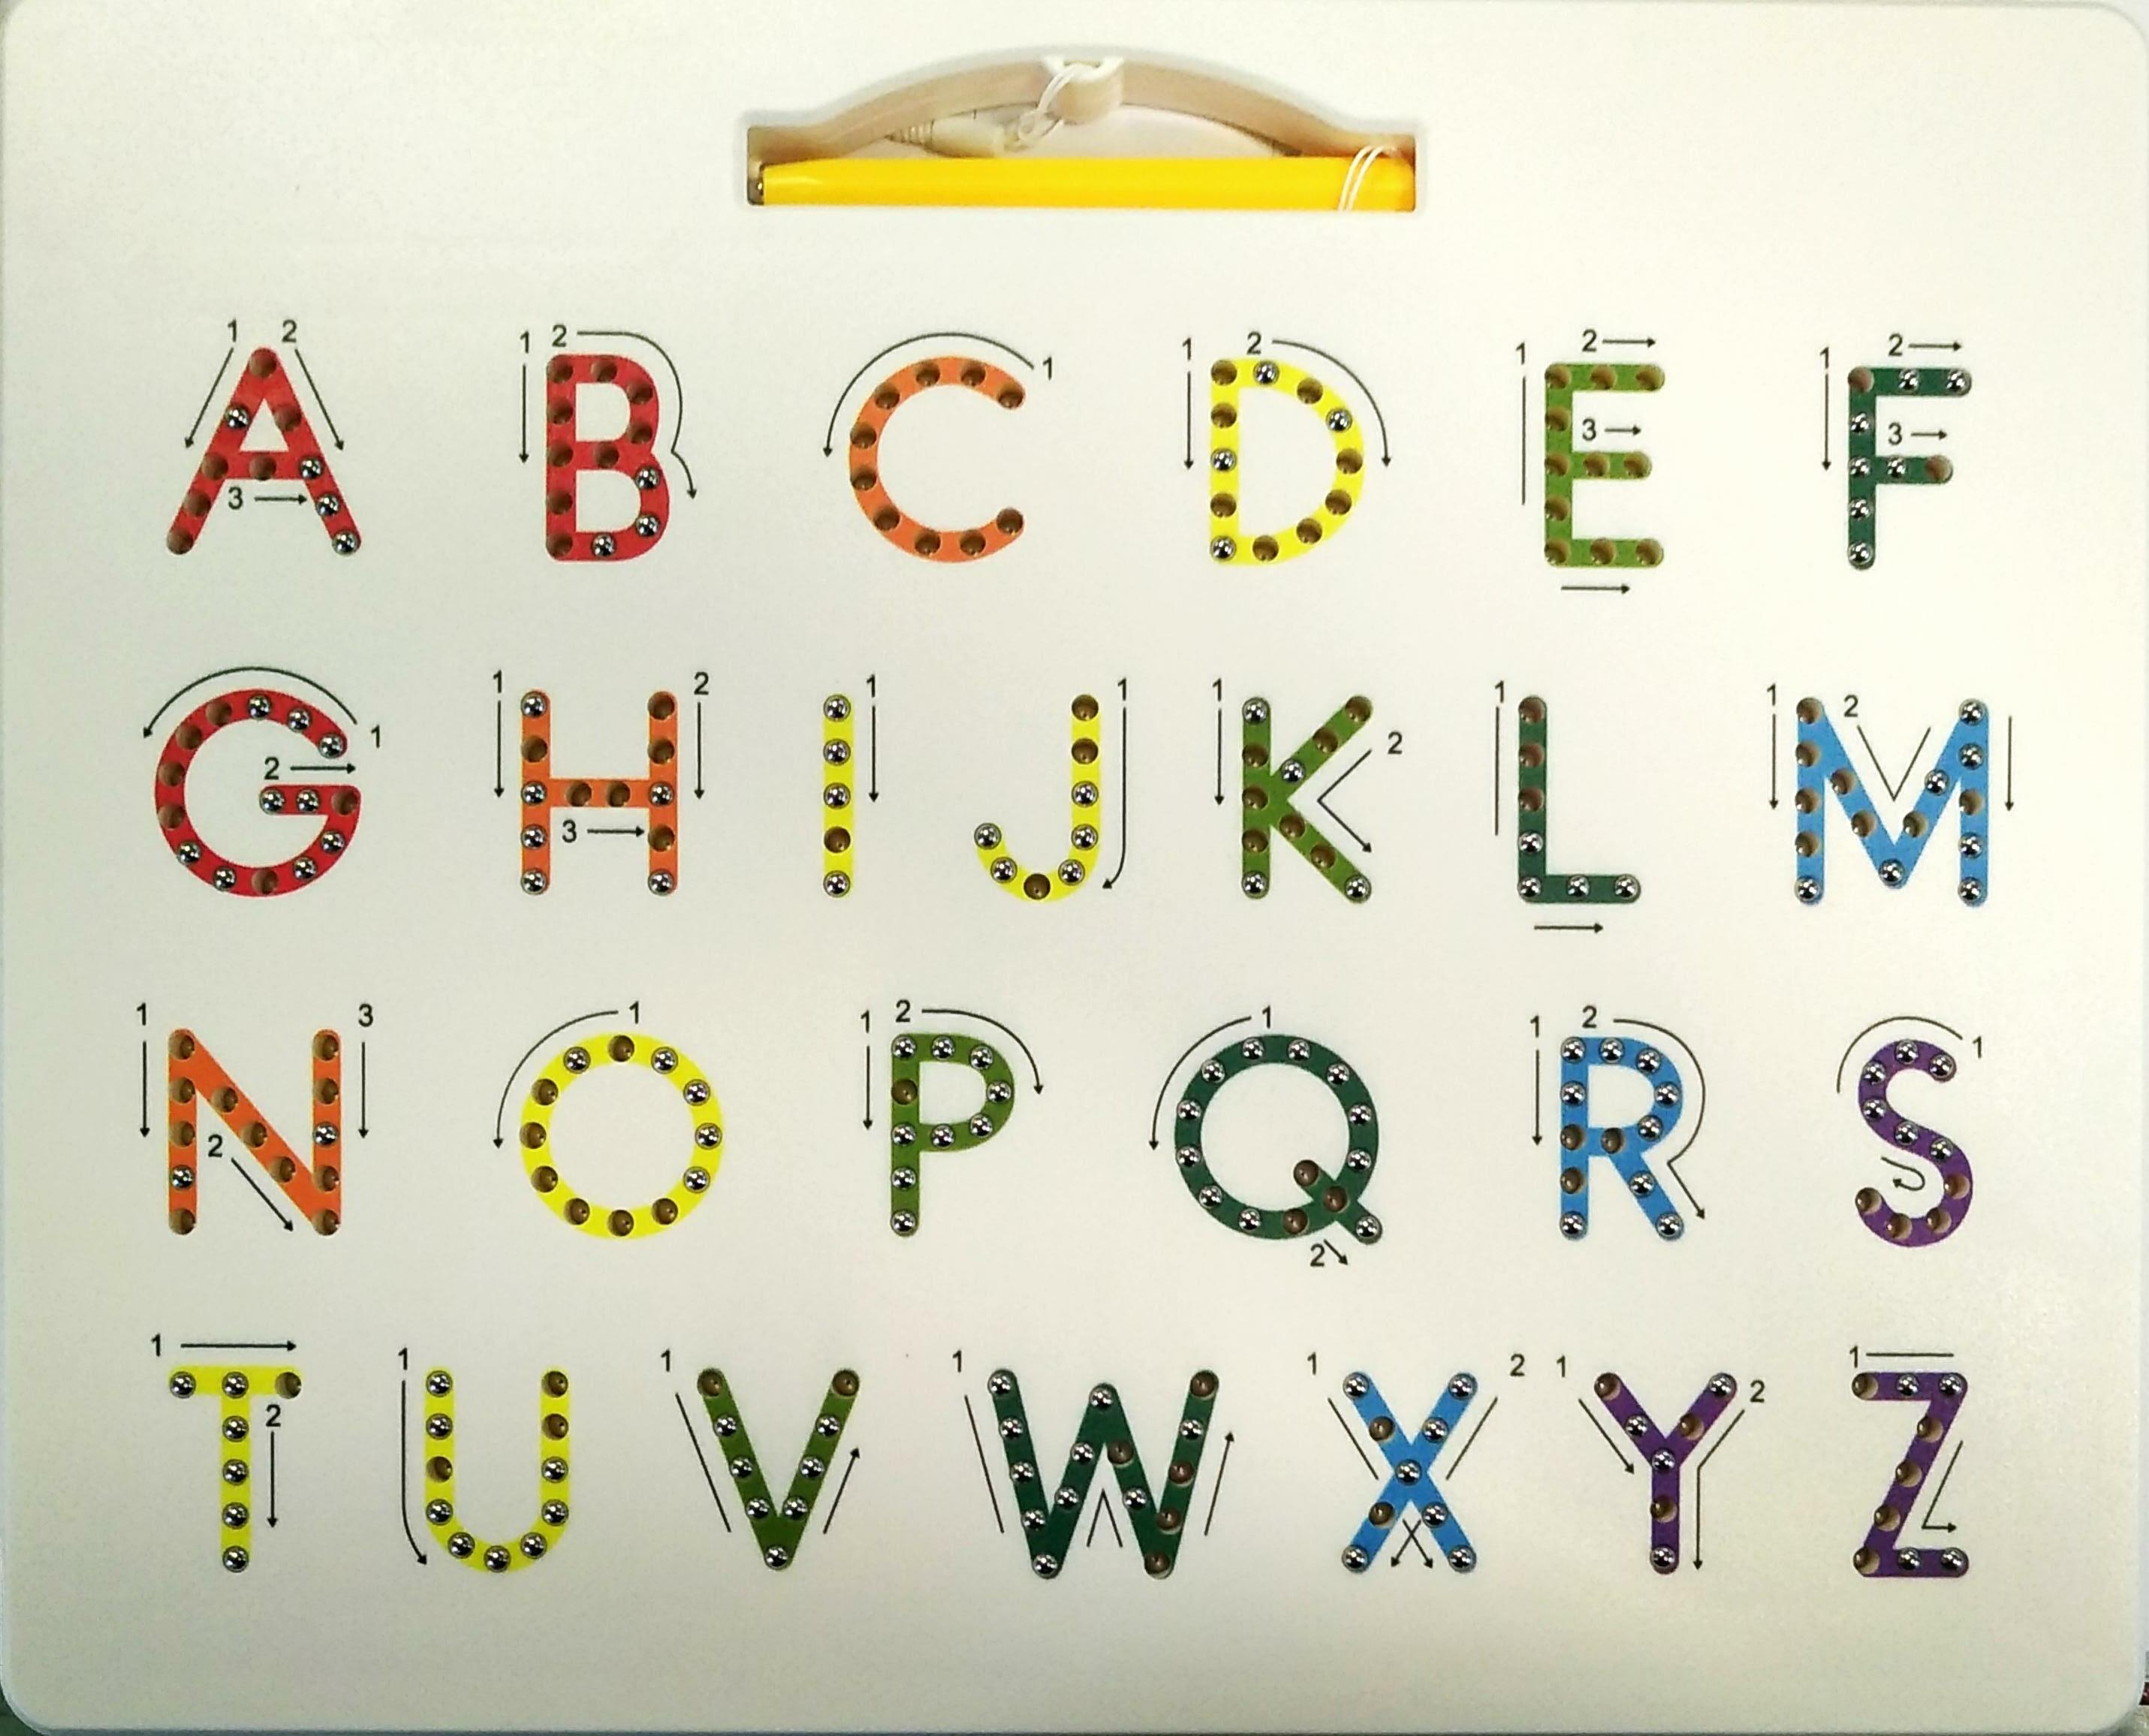 TABLETTE CHIFFRES LETTRES<br>Référence ludothèque : 4232<br>1 à 1 joueur(s) <br>Cette tablette magnétique permet d'apprendre à écrire les lettres et les chiffres.